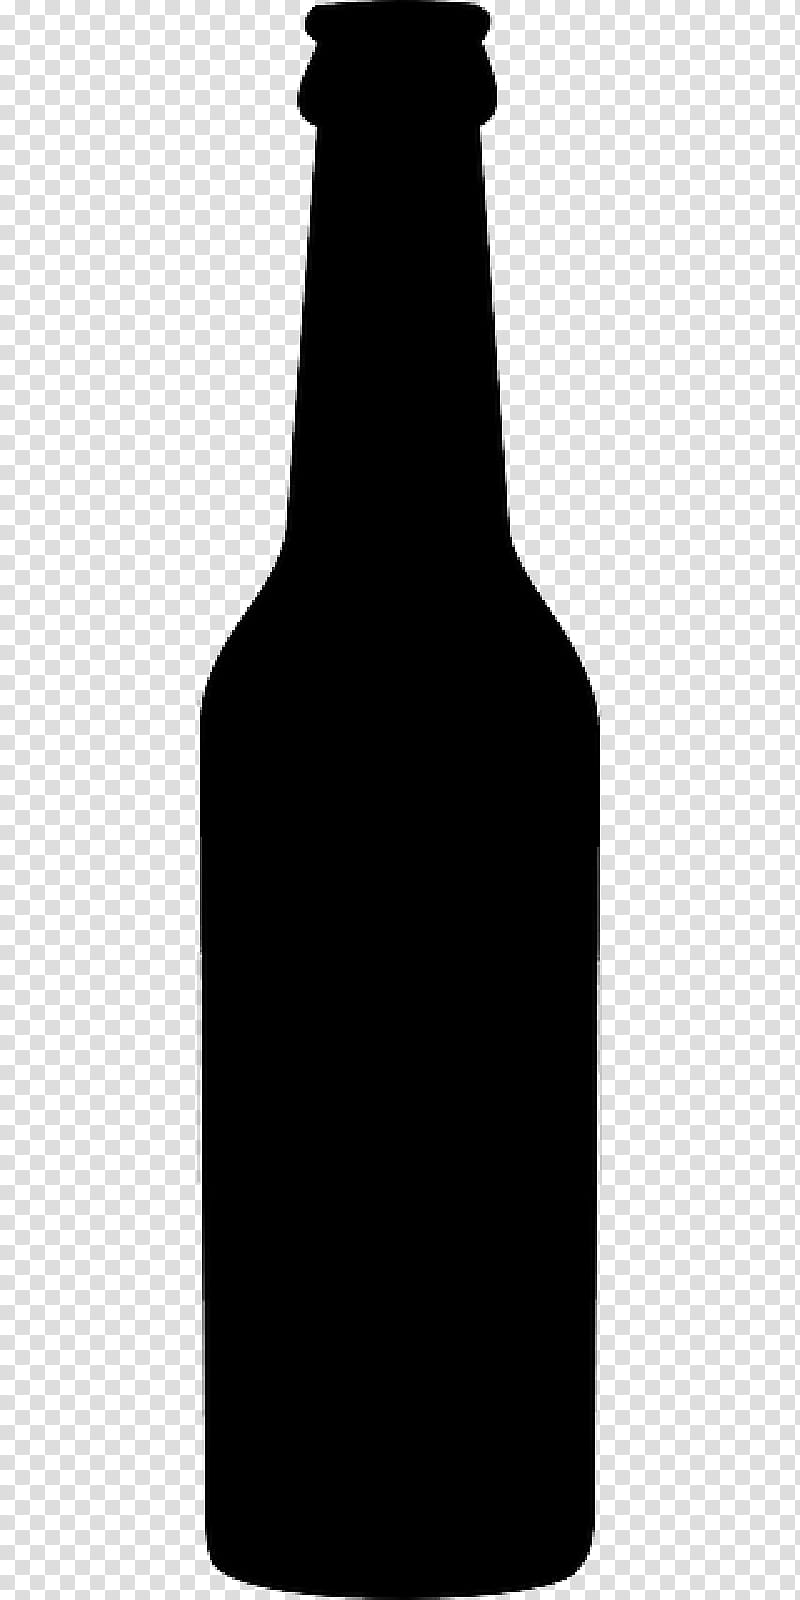 Beer, Dubliner, Beer Bottle, Silhouette, Alcoholic Beverages, Bar, Blog, Glass Bottle transparent background PNG clipart